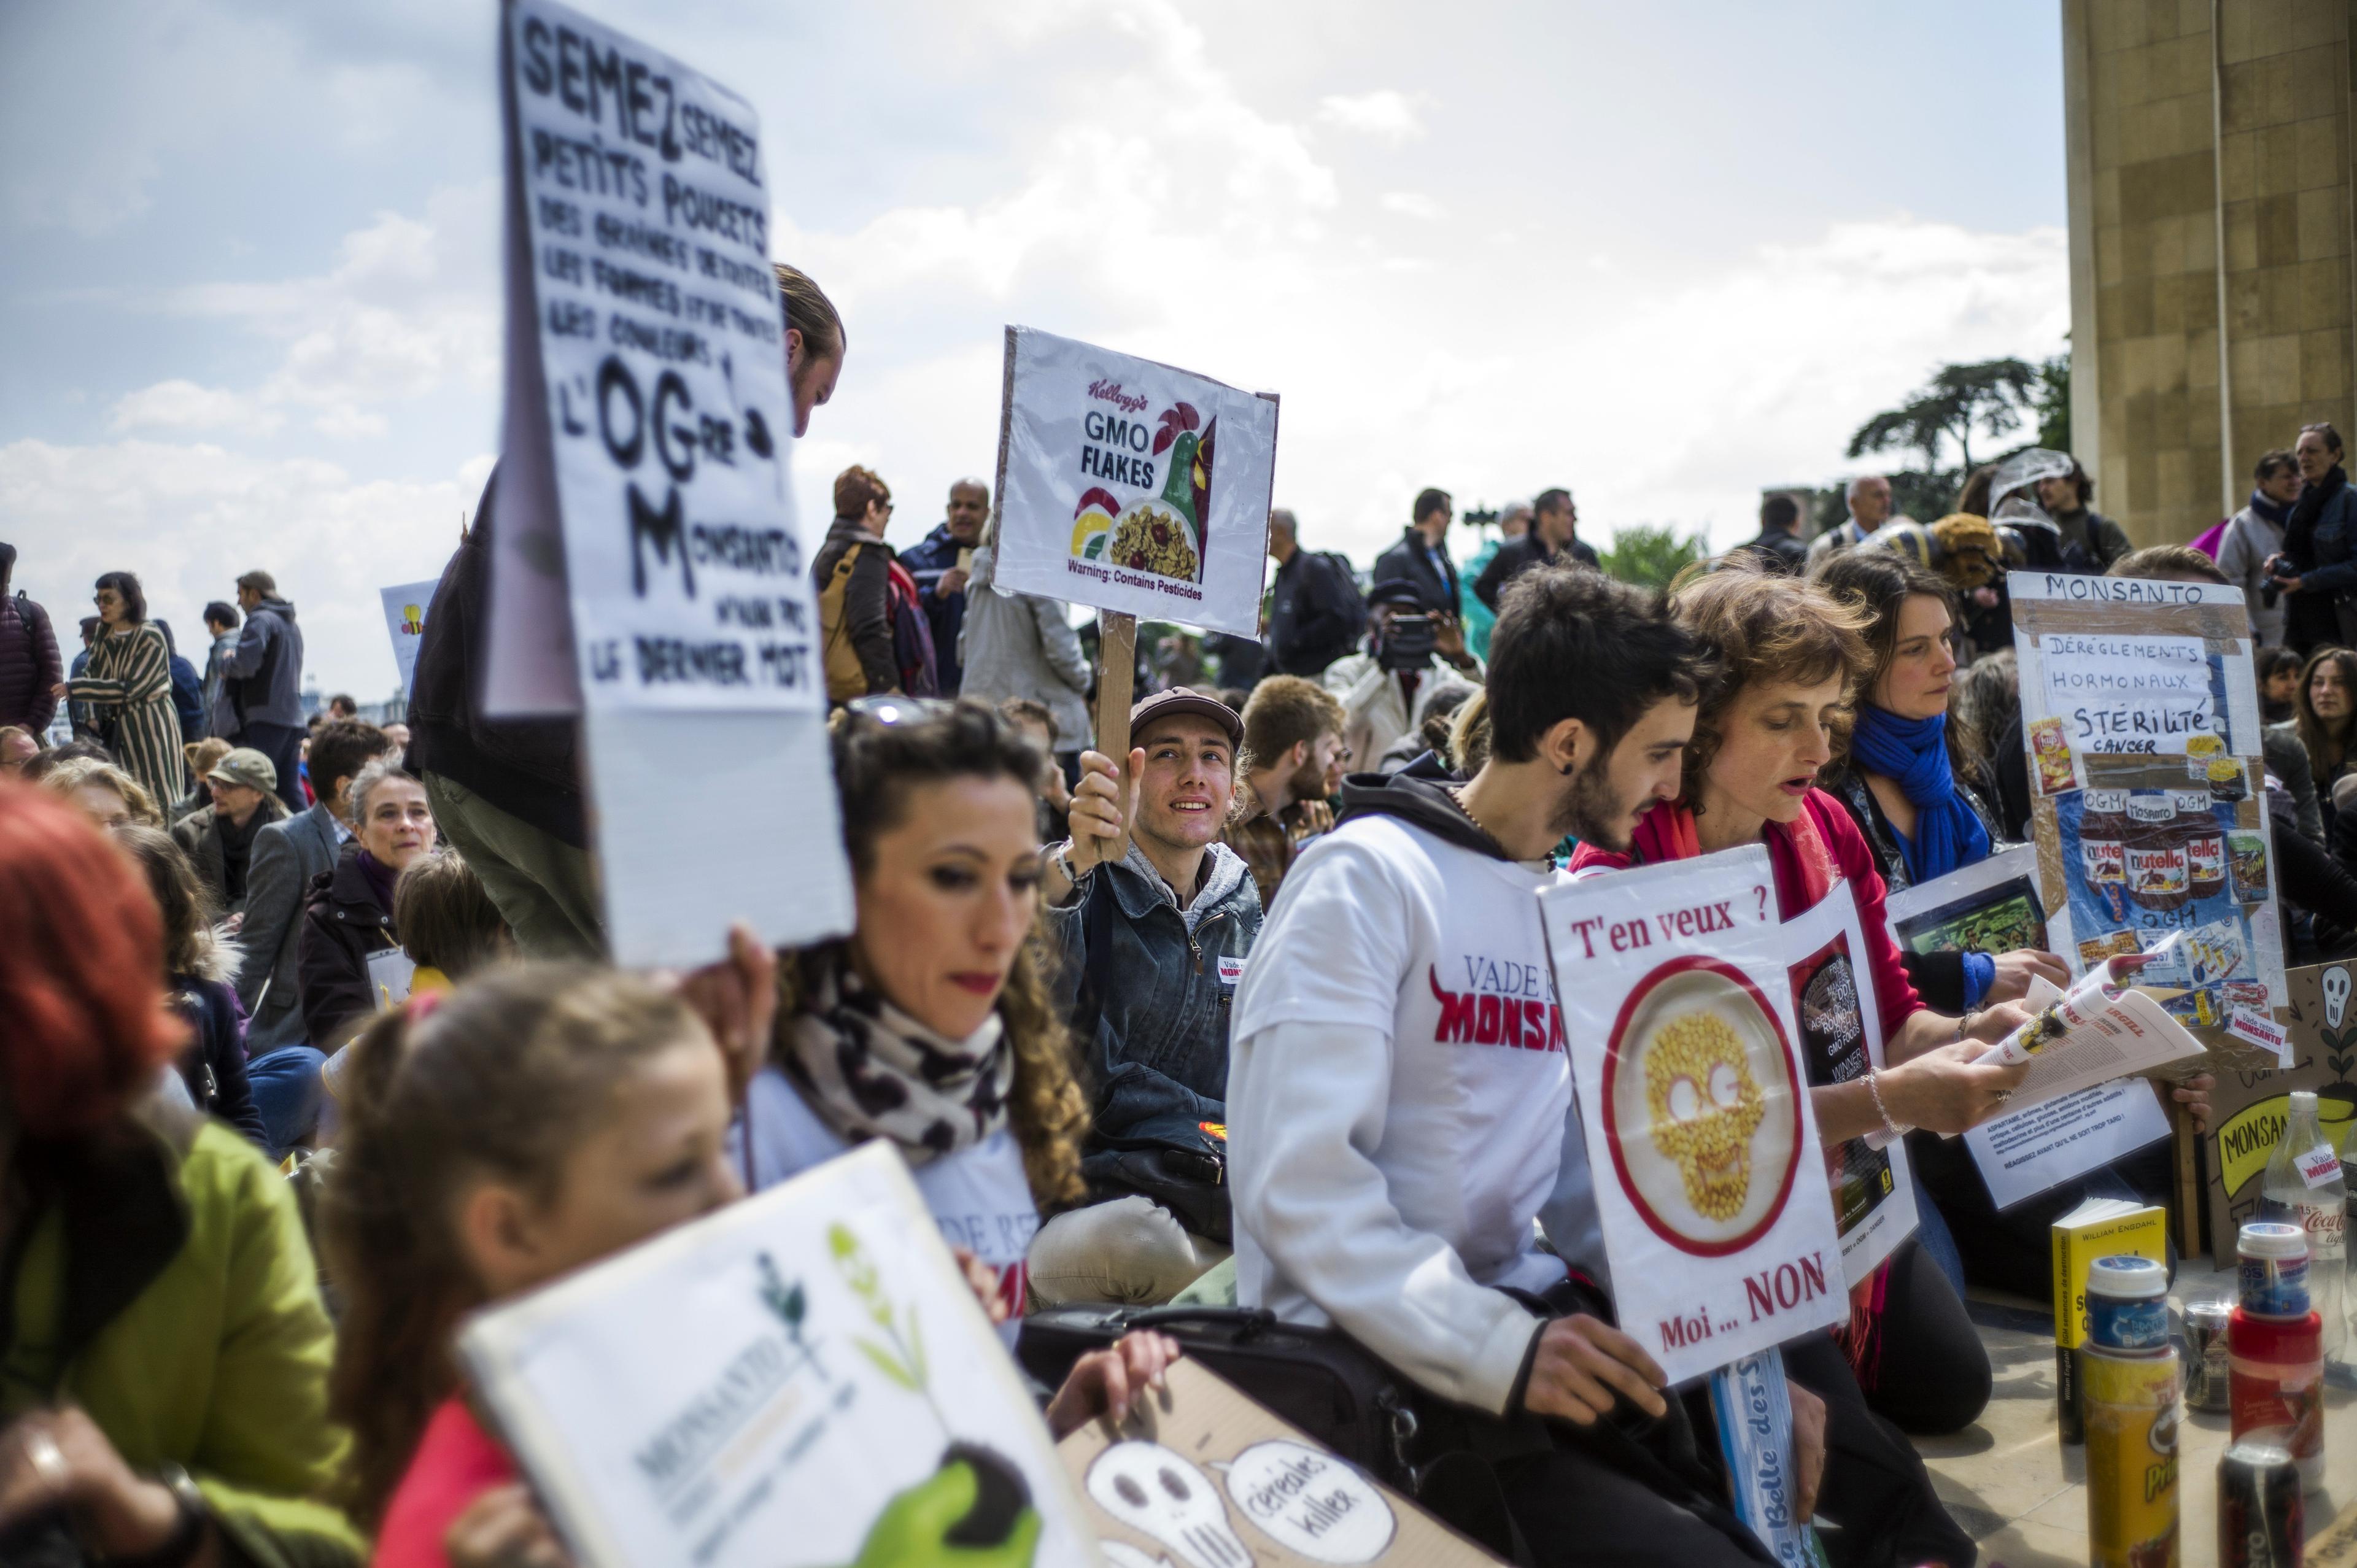 Demonstrationer i Paris den 25 maj 2013 mot genmodifiering (GMO) och den amerikanska tillverkaren av GMO-grödor Monsanto.
(Foto: Fred Dufour /AFP/Getty Images